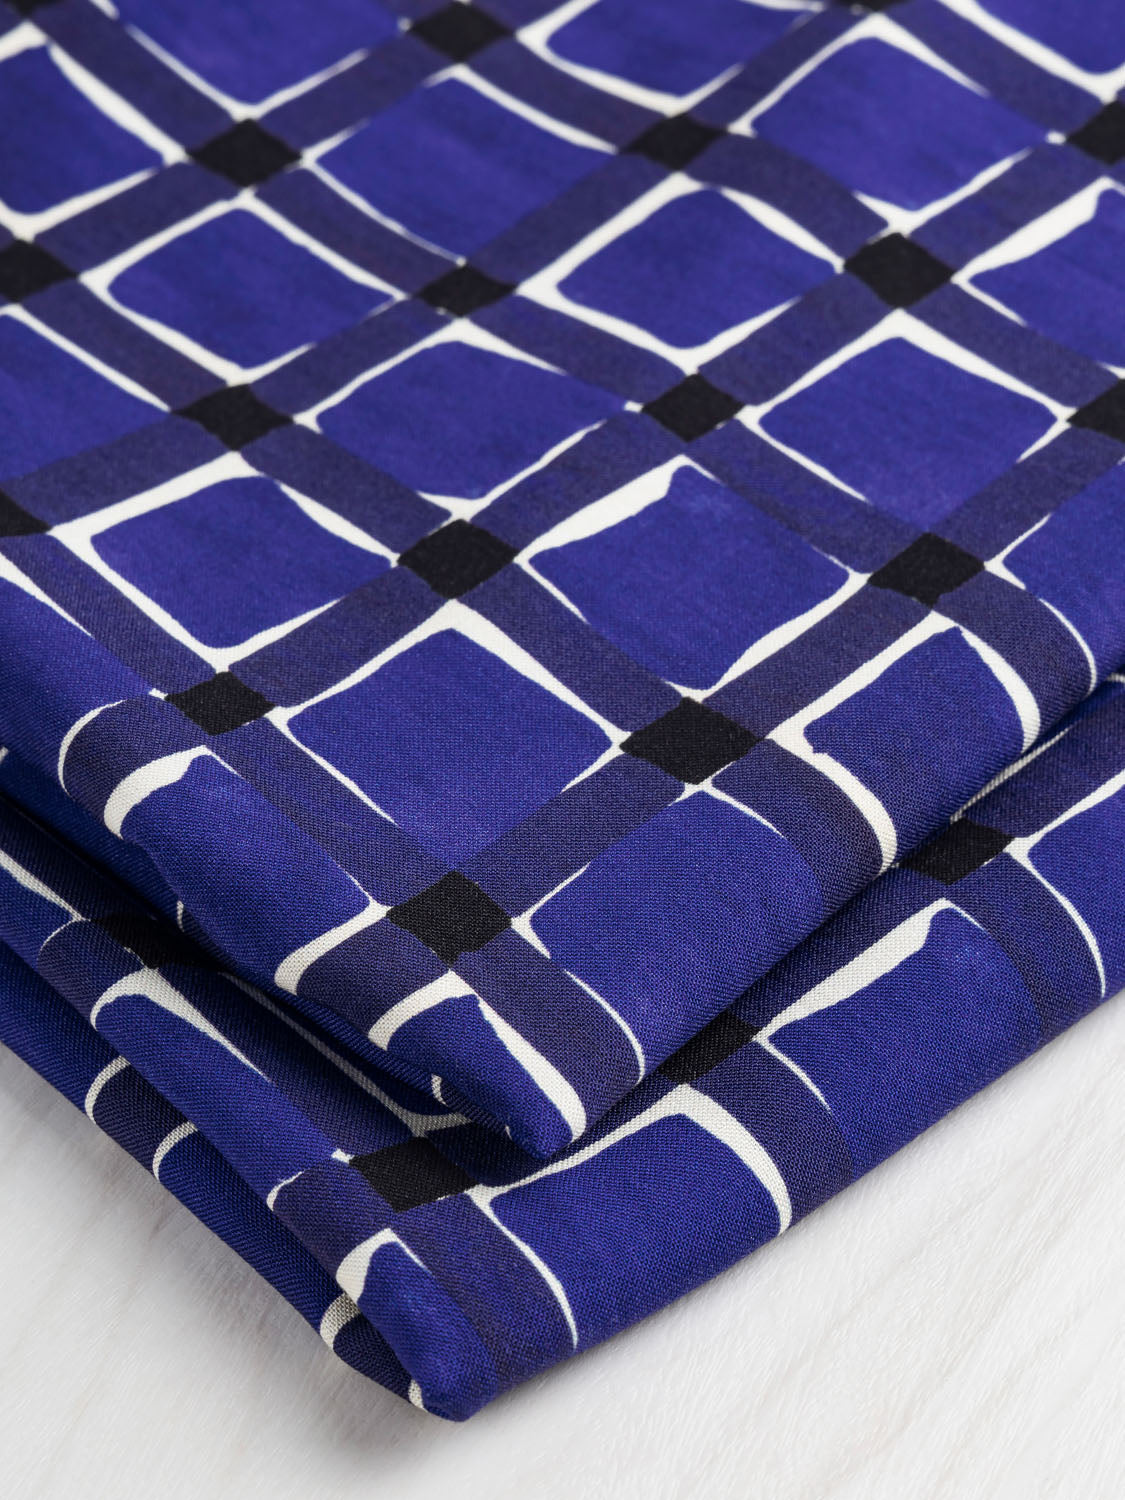 Watercolour Check Print Viscose - Blueberry + Cream | Core Fabrics